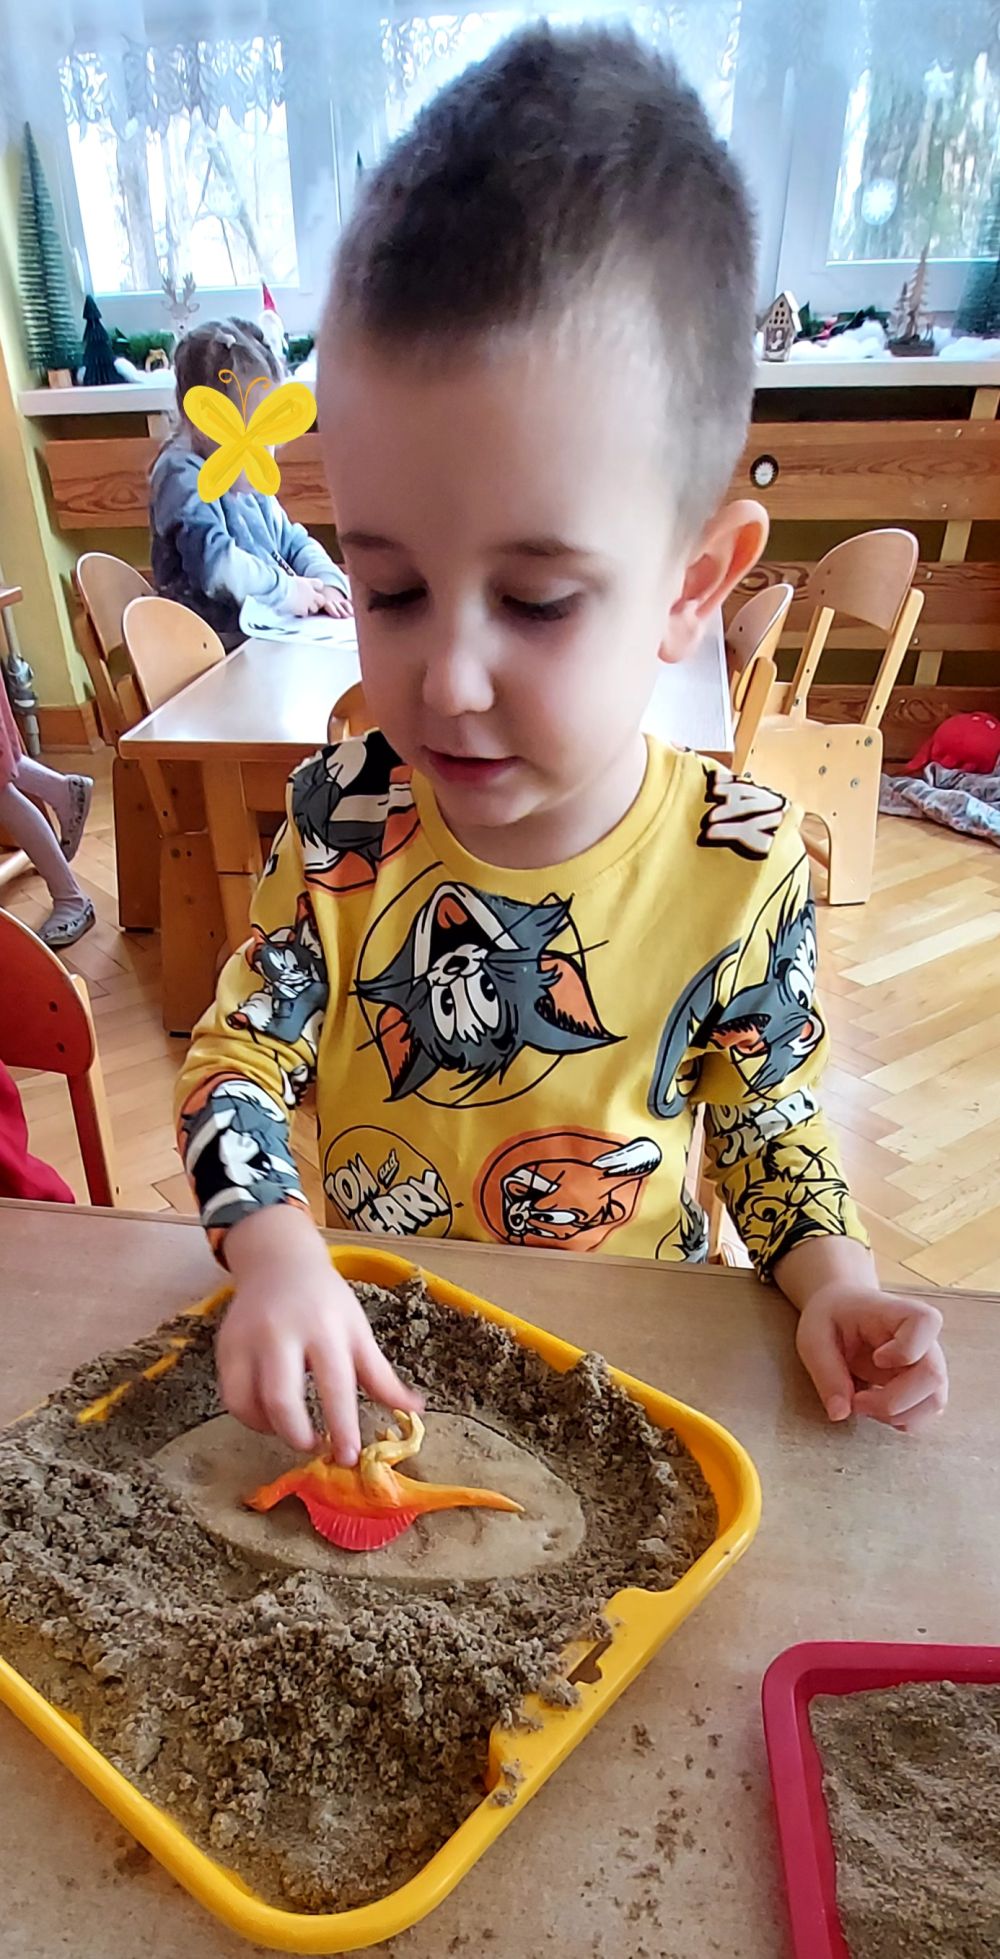 Chłopiec siedzi przy stoliku, przed nim leży miska z piaskiem w której  chłopiec trzyma dinozaura ręka